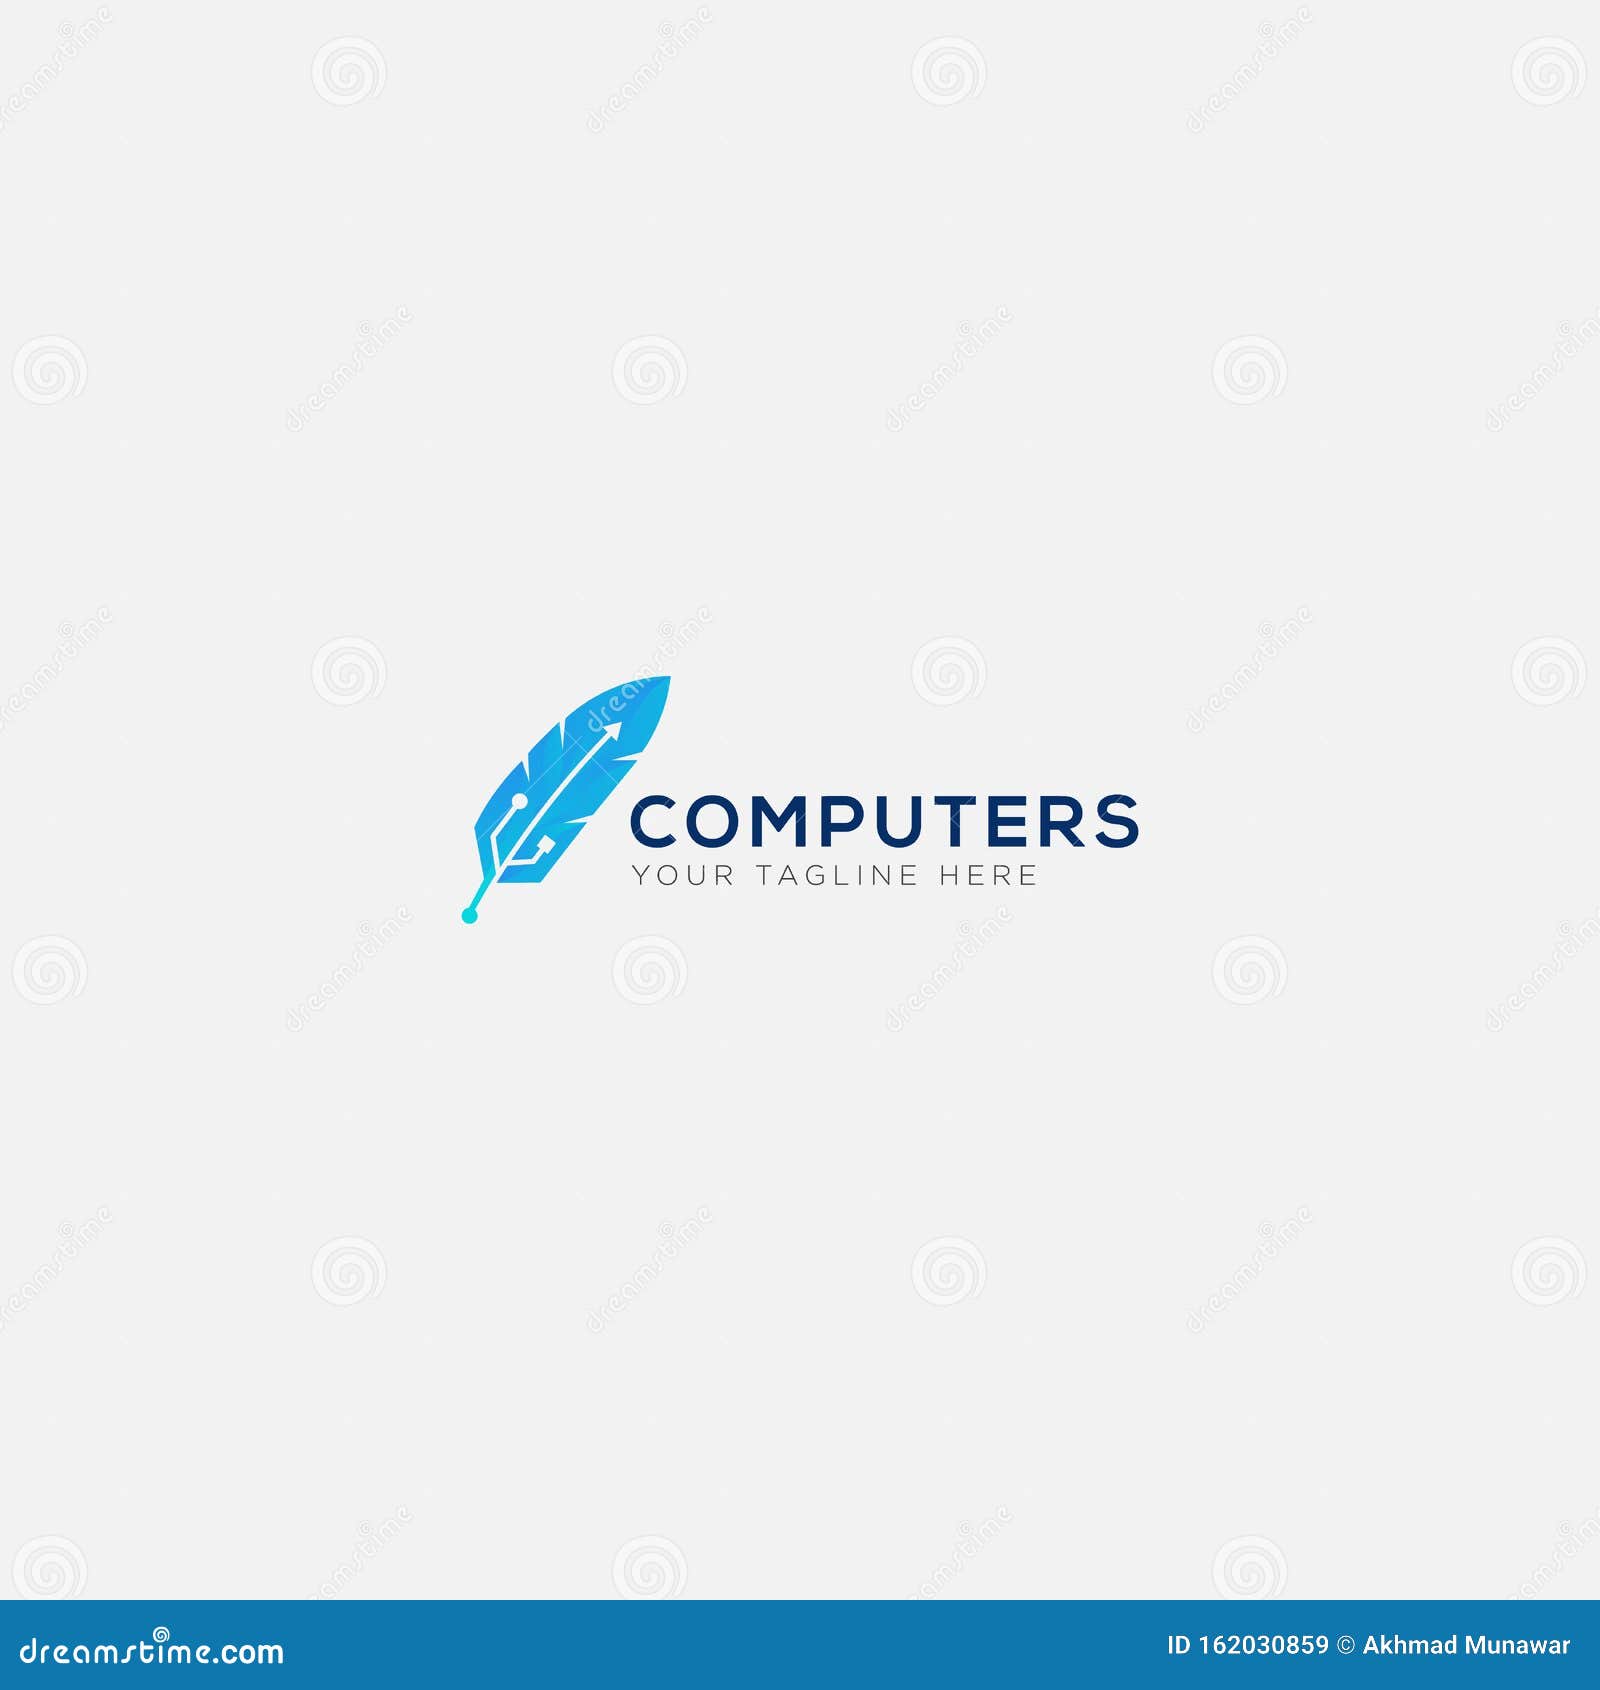 Computer And Usb Pen Service Logo Design Stock Vector